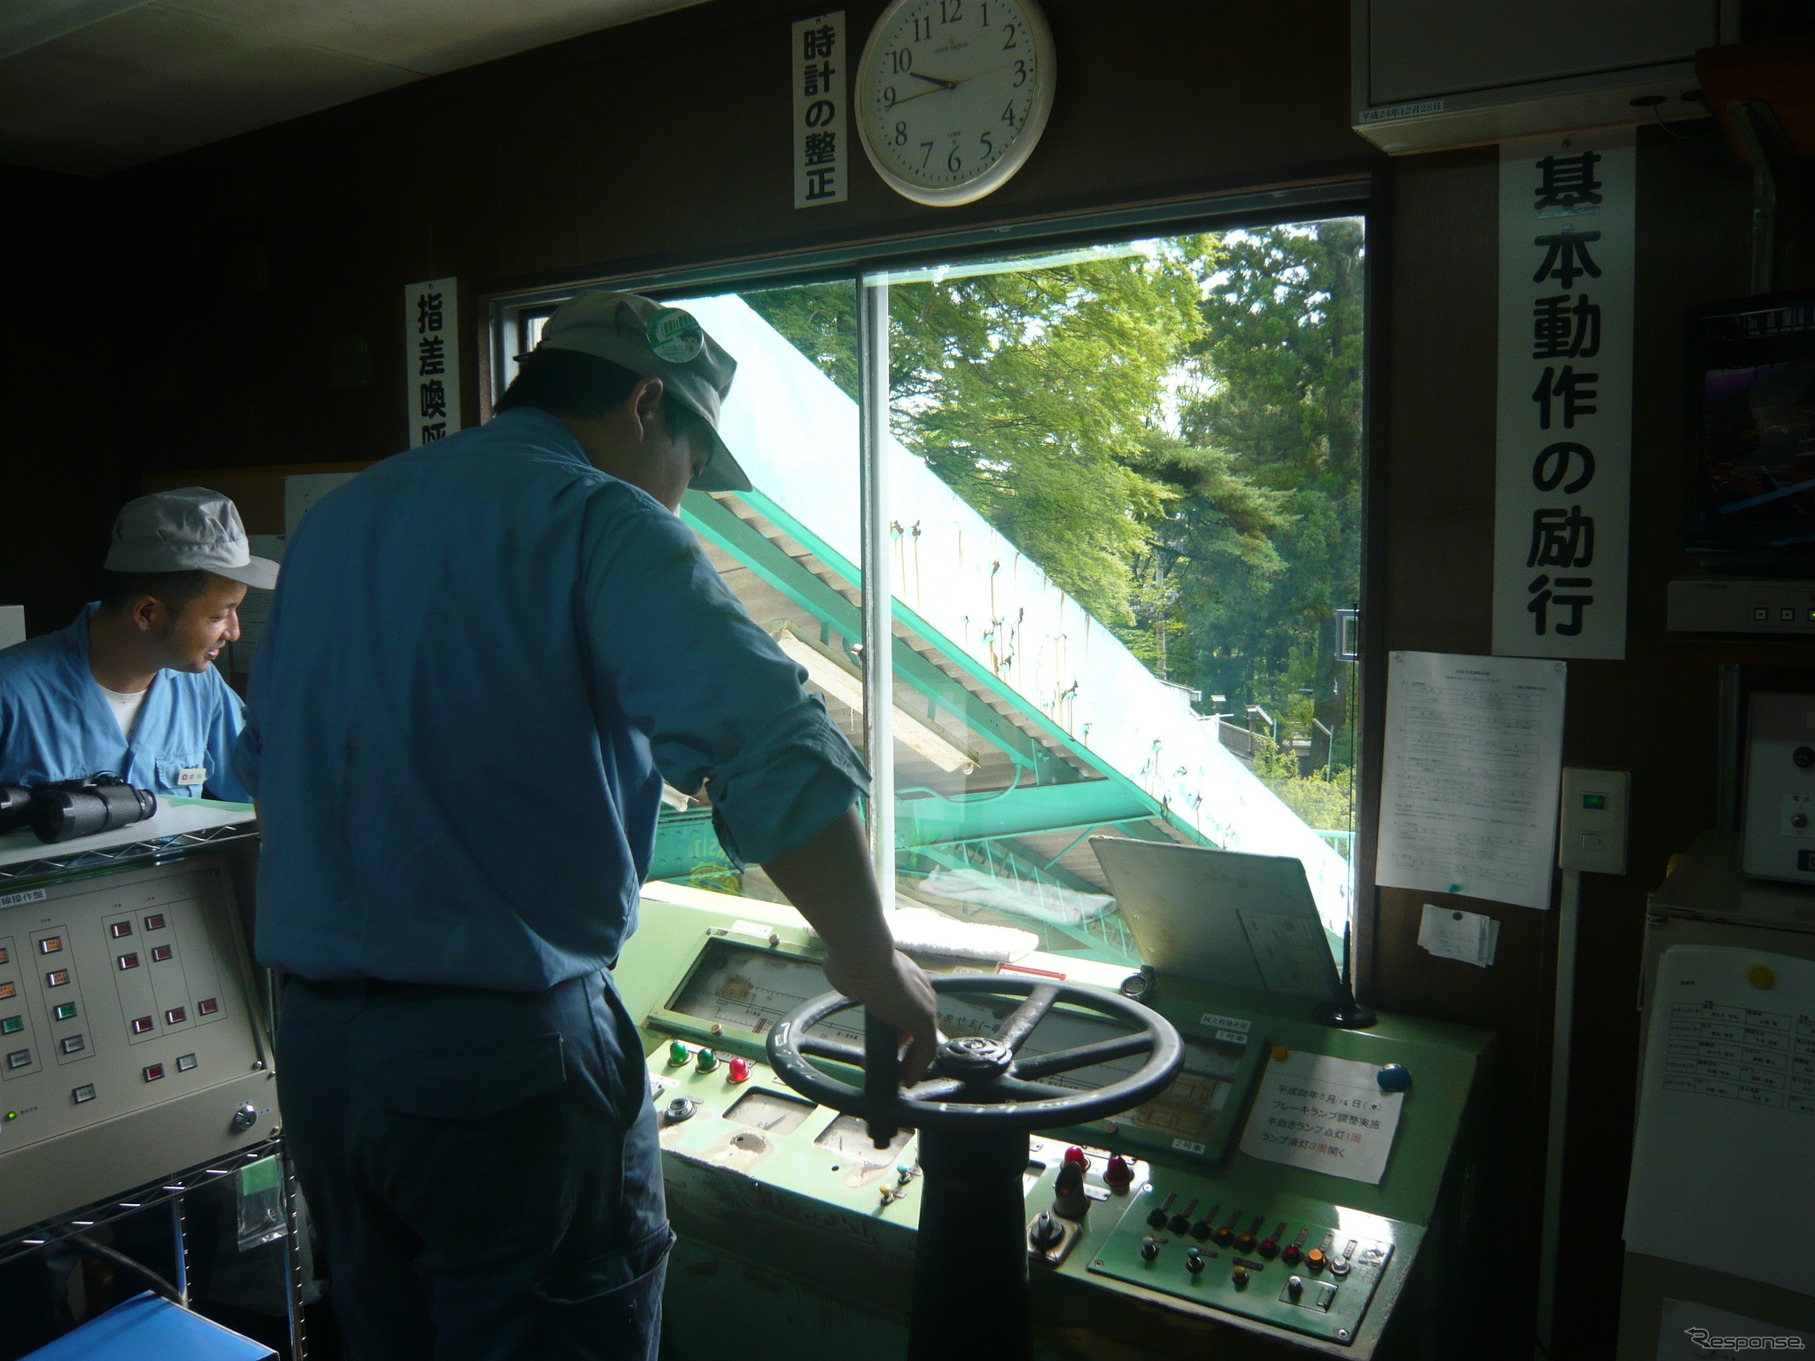 見学会ではケーブルカーの運転室で運転操作の様子を見学できる。